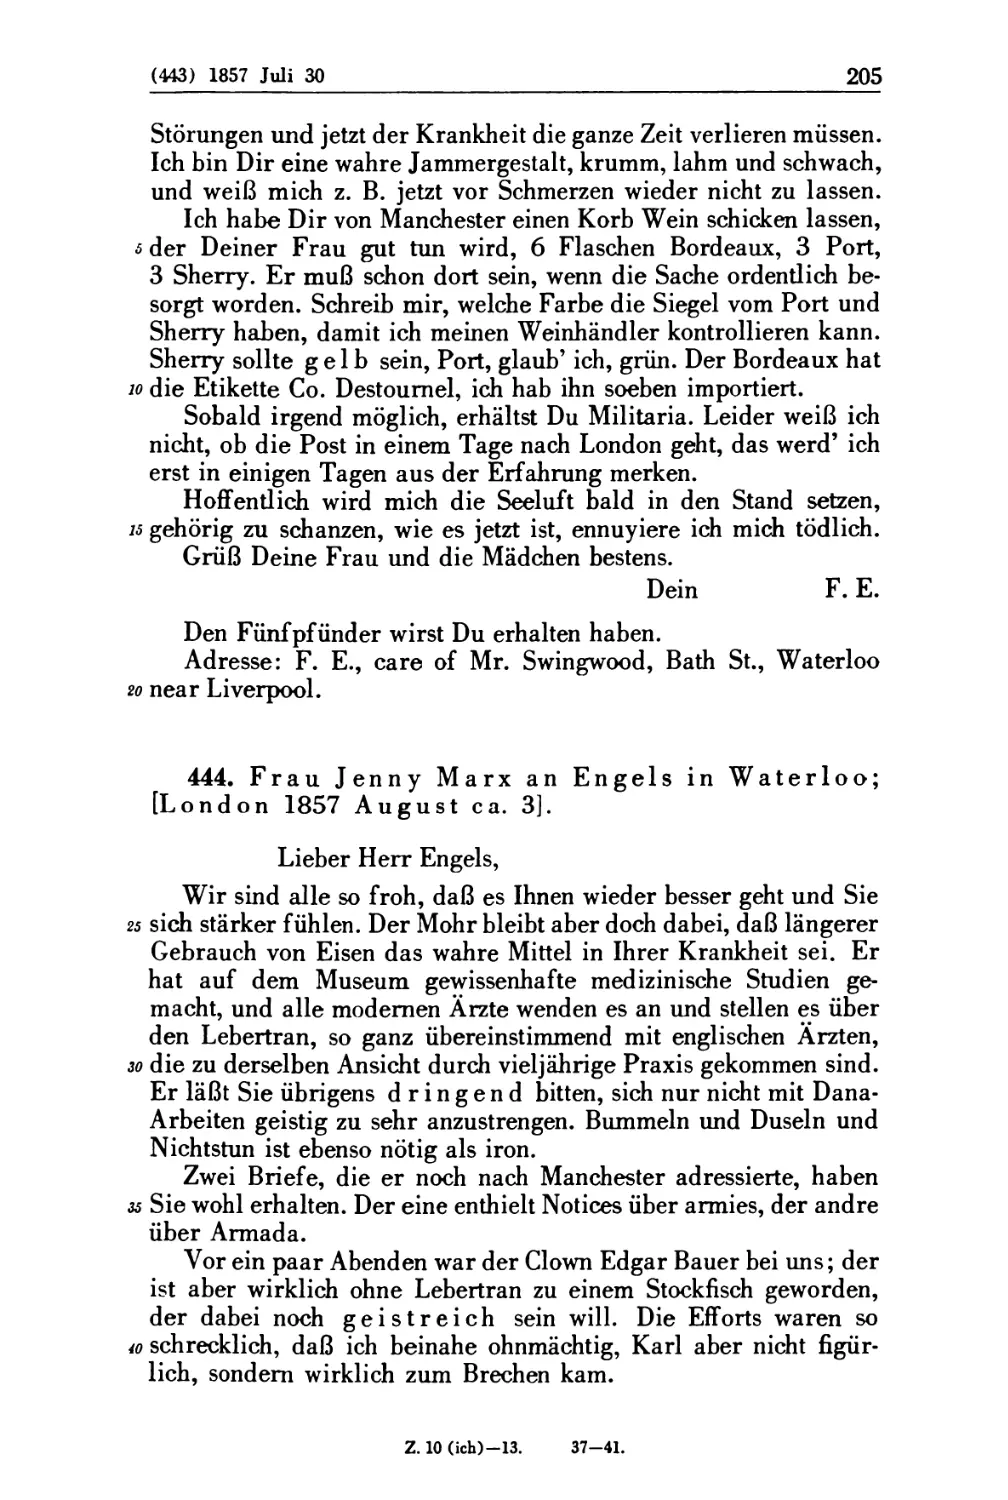 444. Frau Jenny Marx an Engels in Waterloo; [London 1857. August ca. 3]